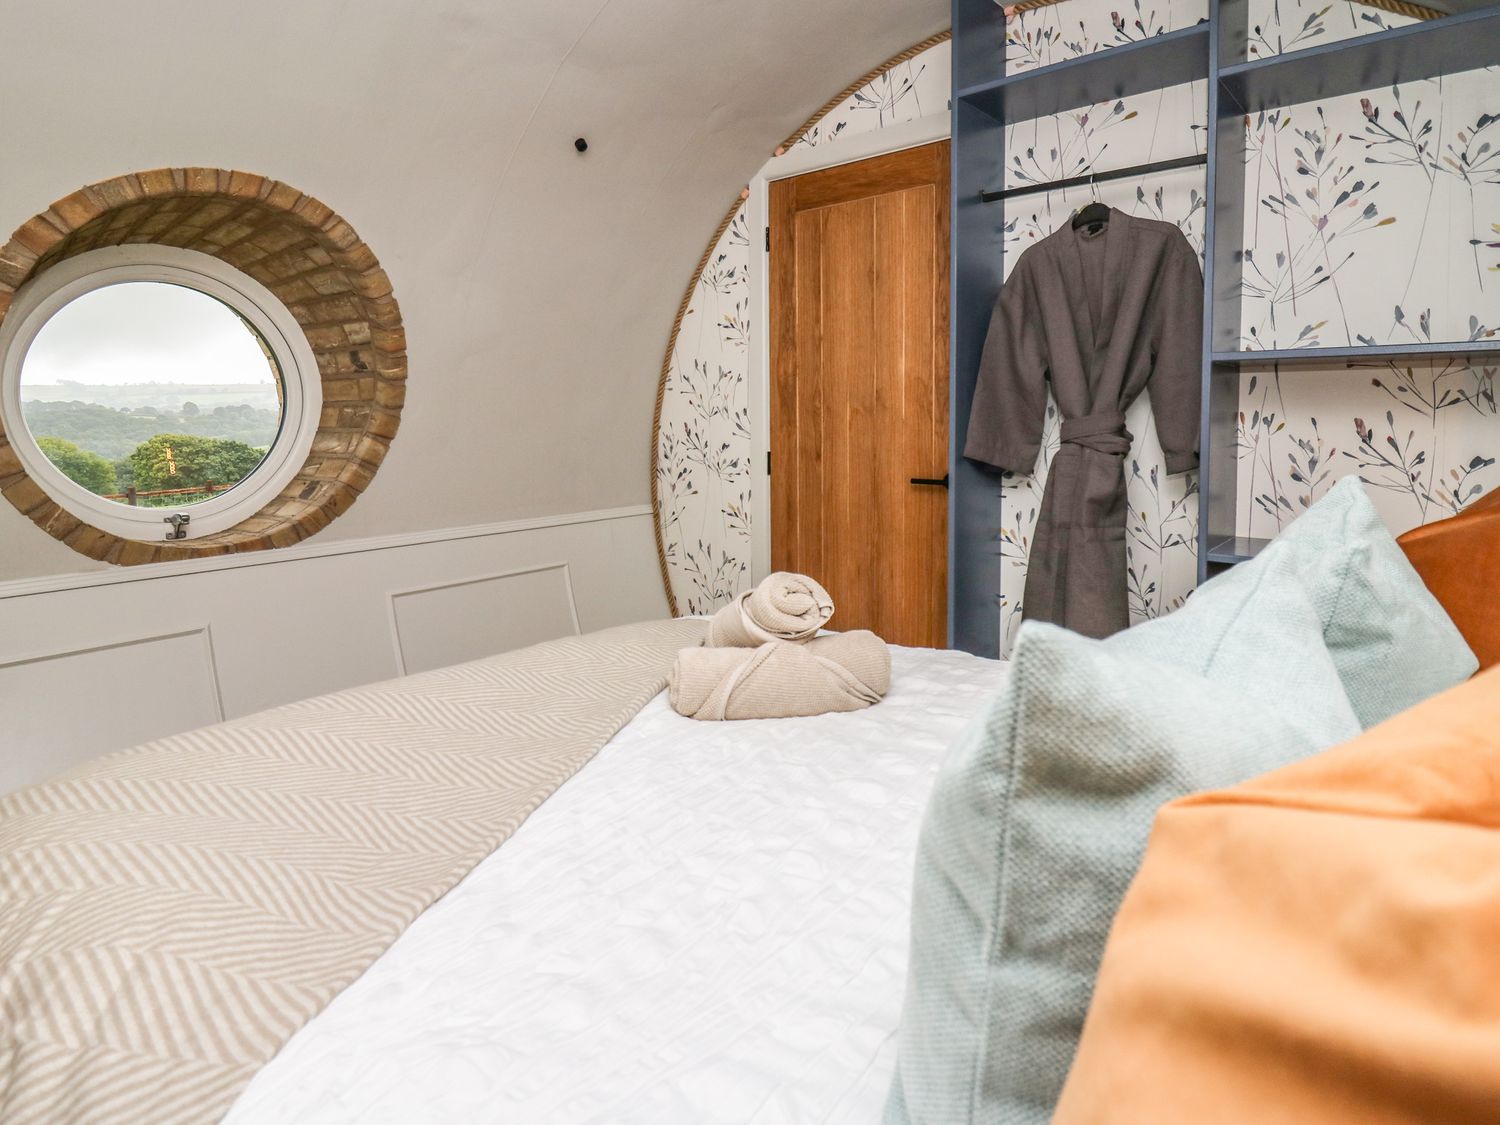 Hobbit Home 2 bed, slps 4 - name TBC, Llanfair Caereinion